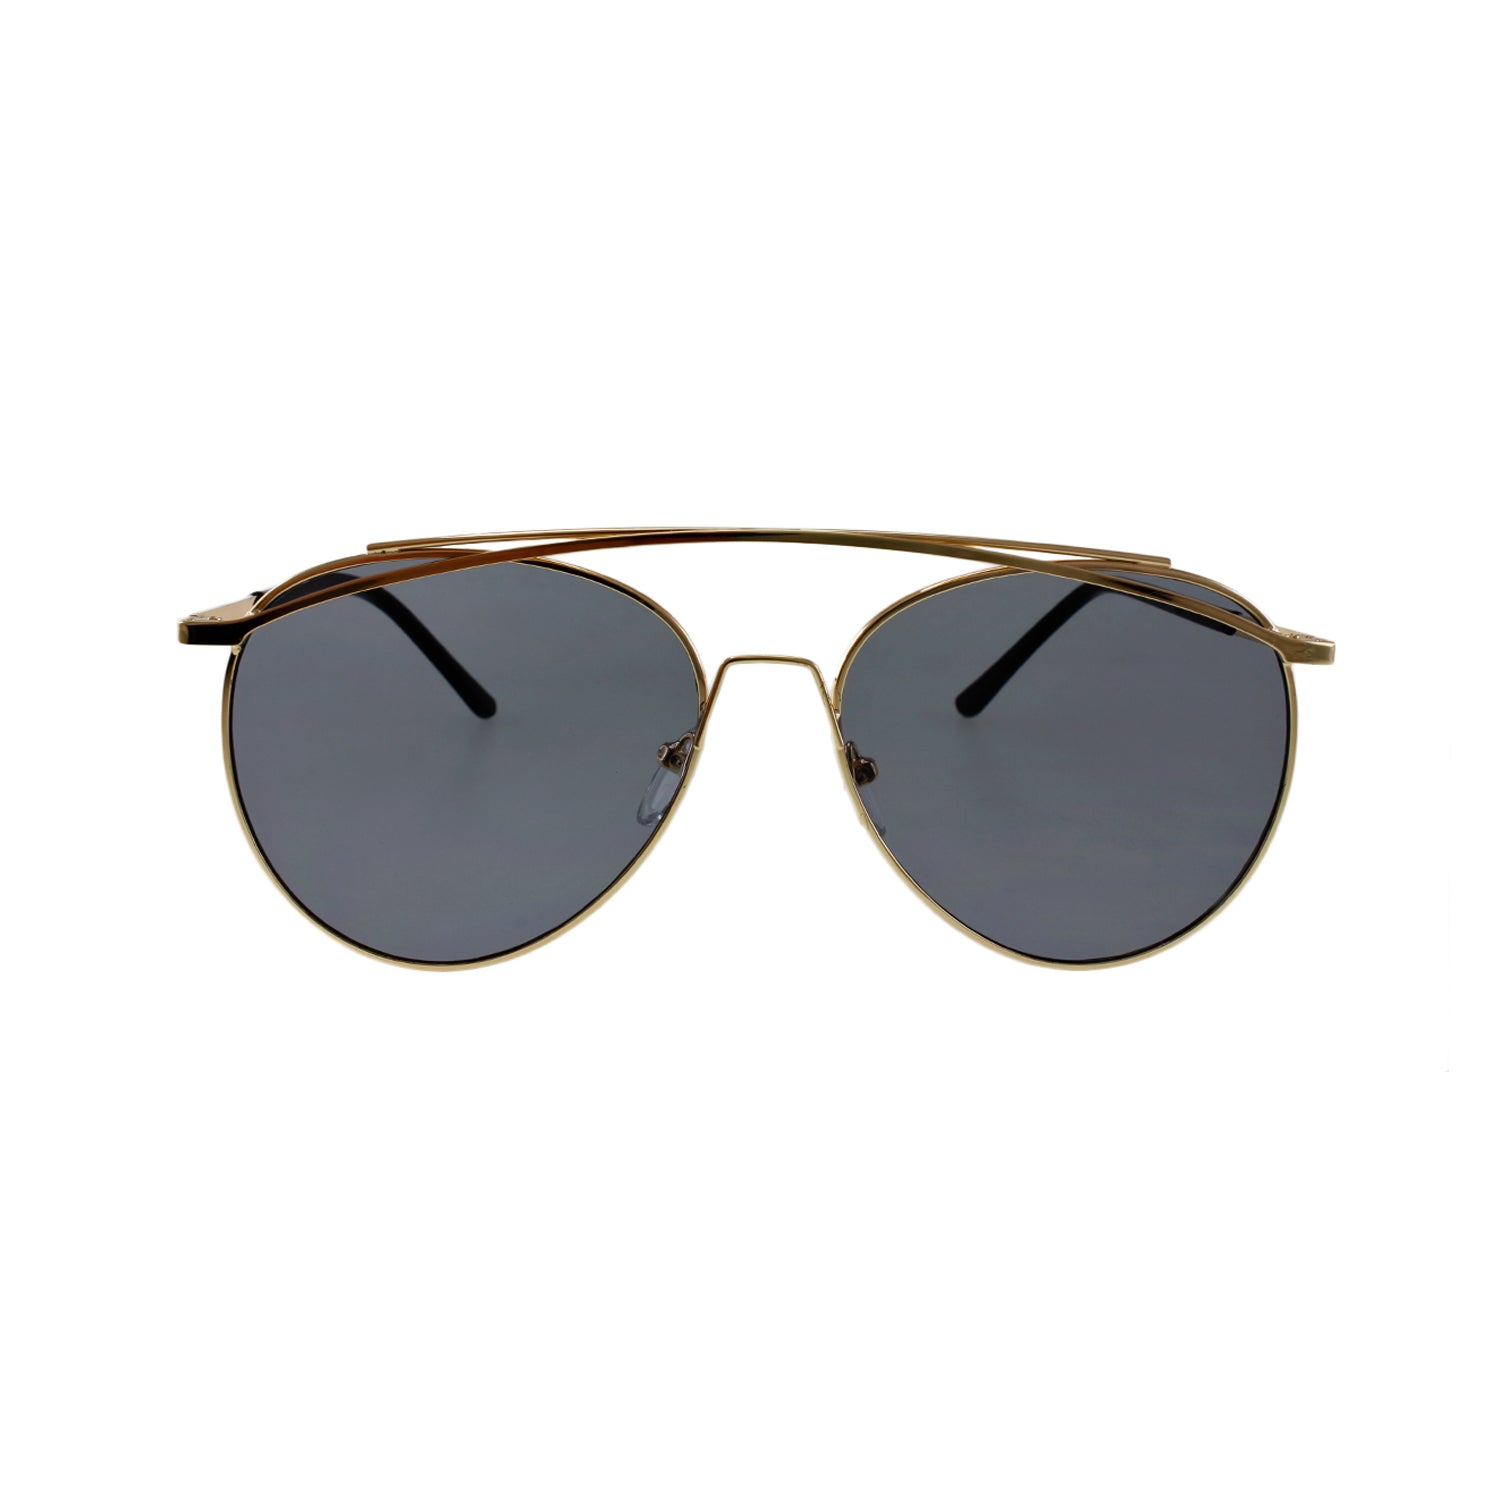 نظارات Jase New York Lincoln الشمسية باللون الدخاني